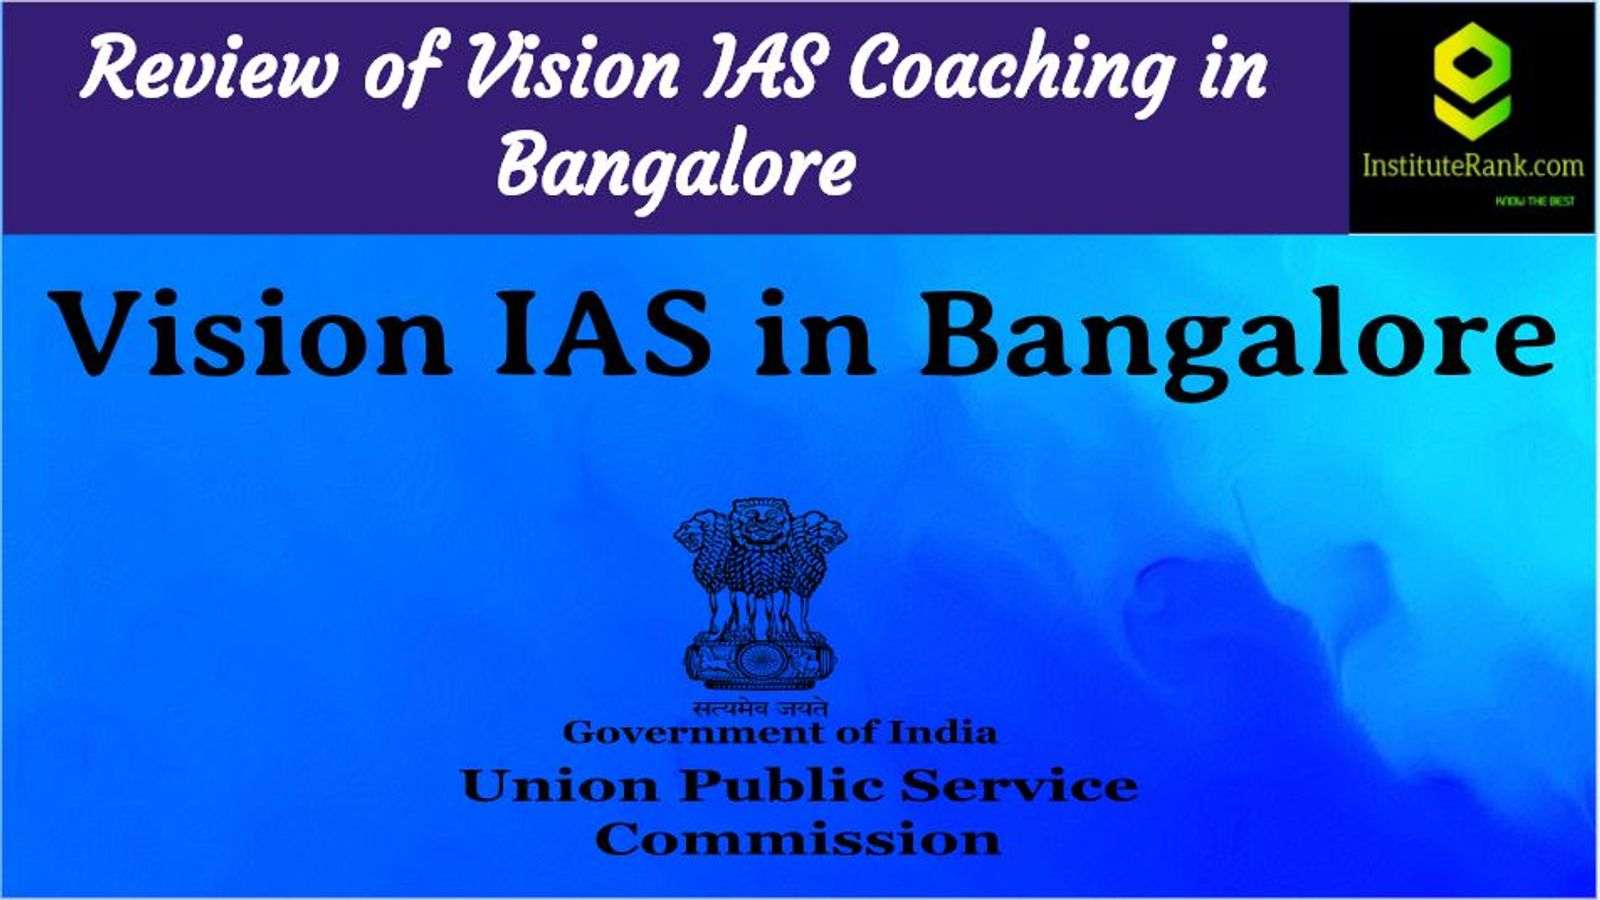 IAS Coaching in Bangalore Reviews